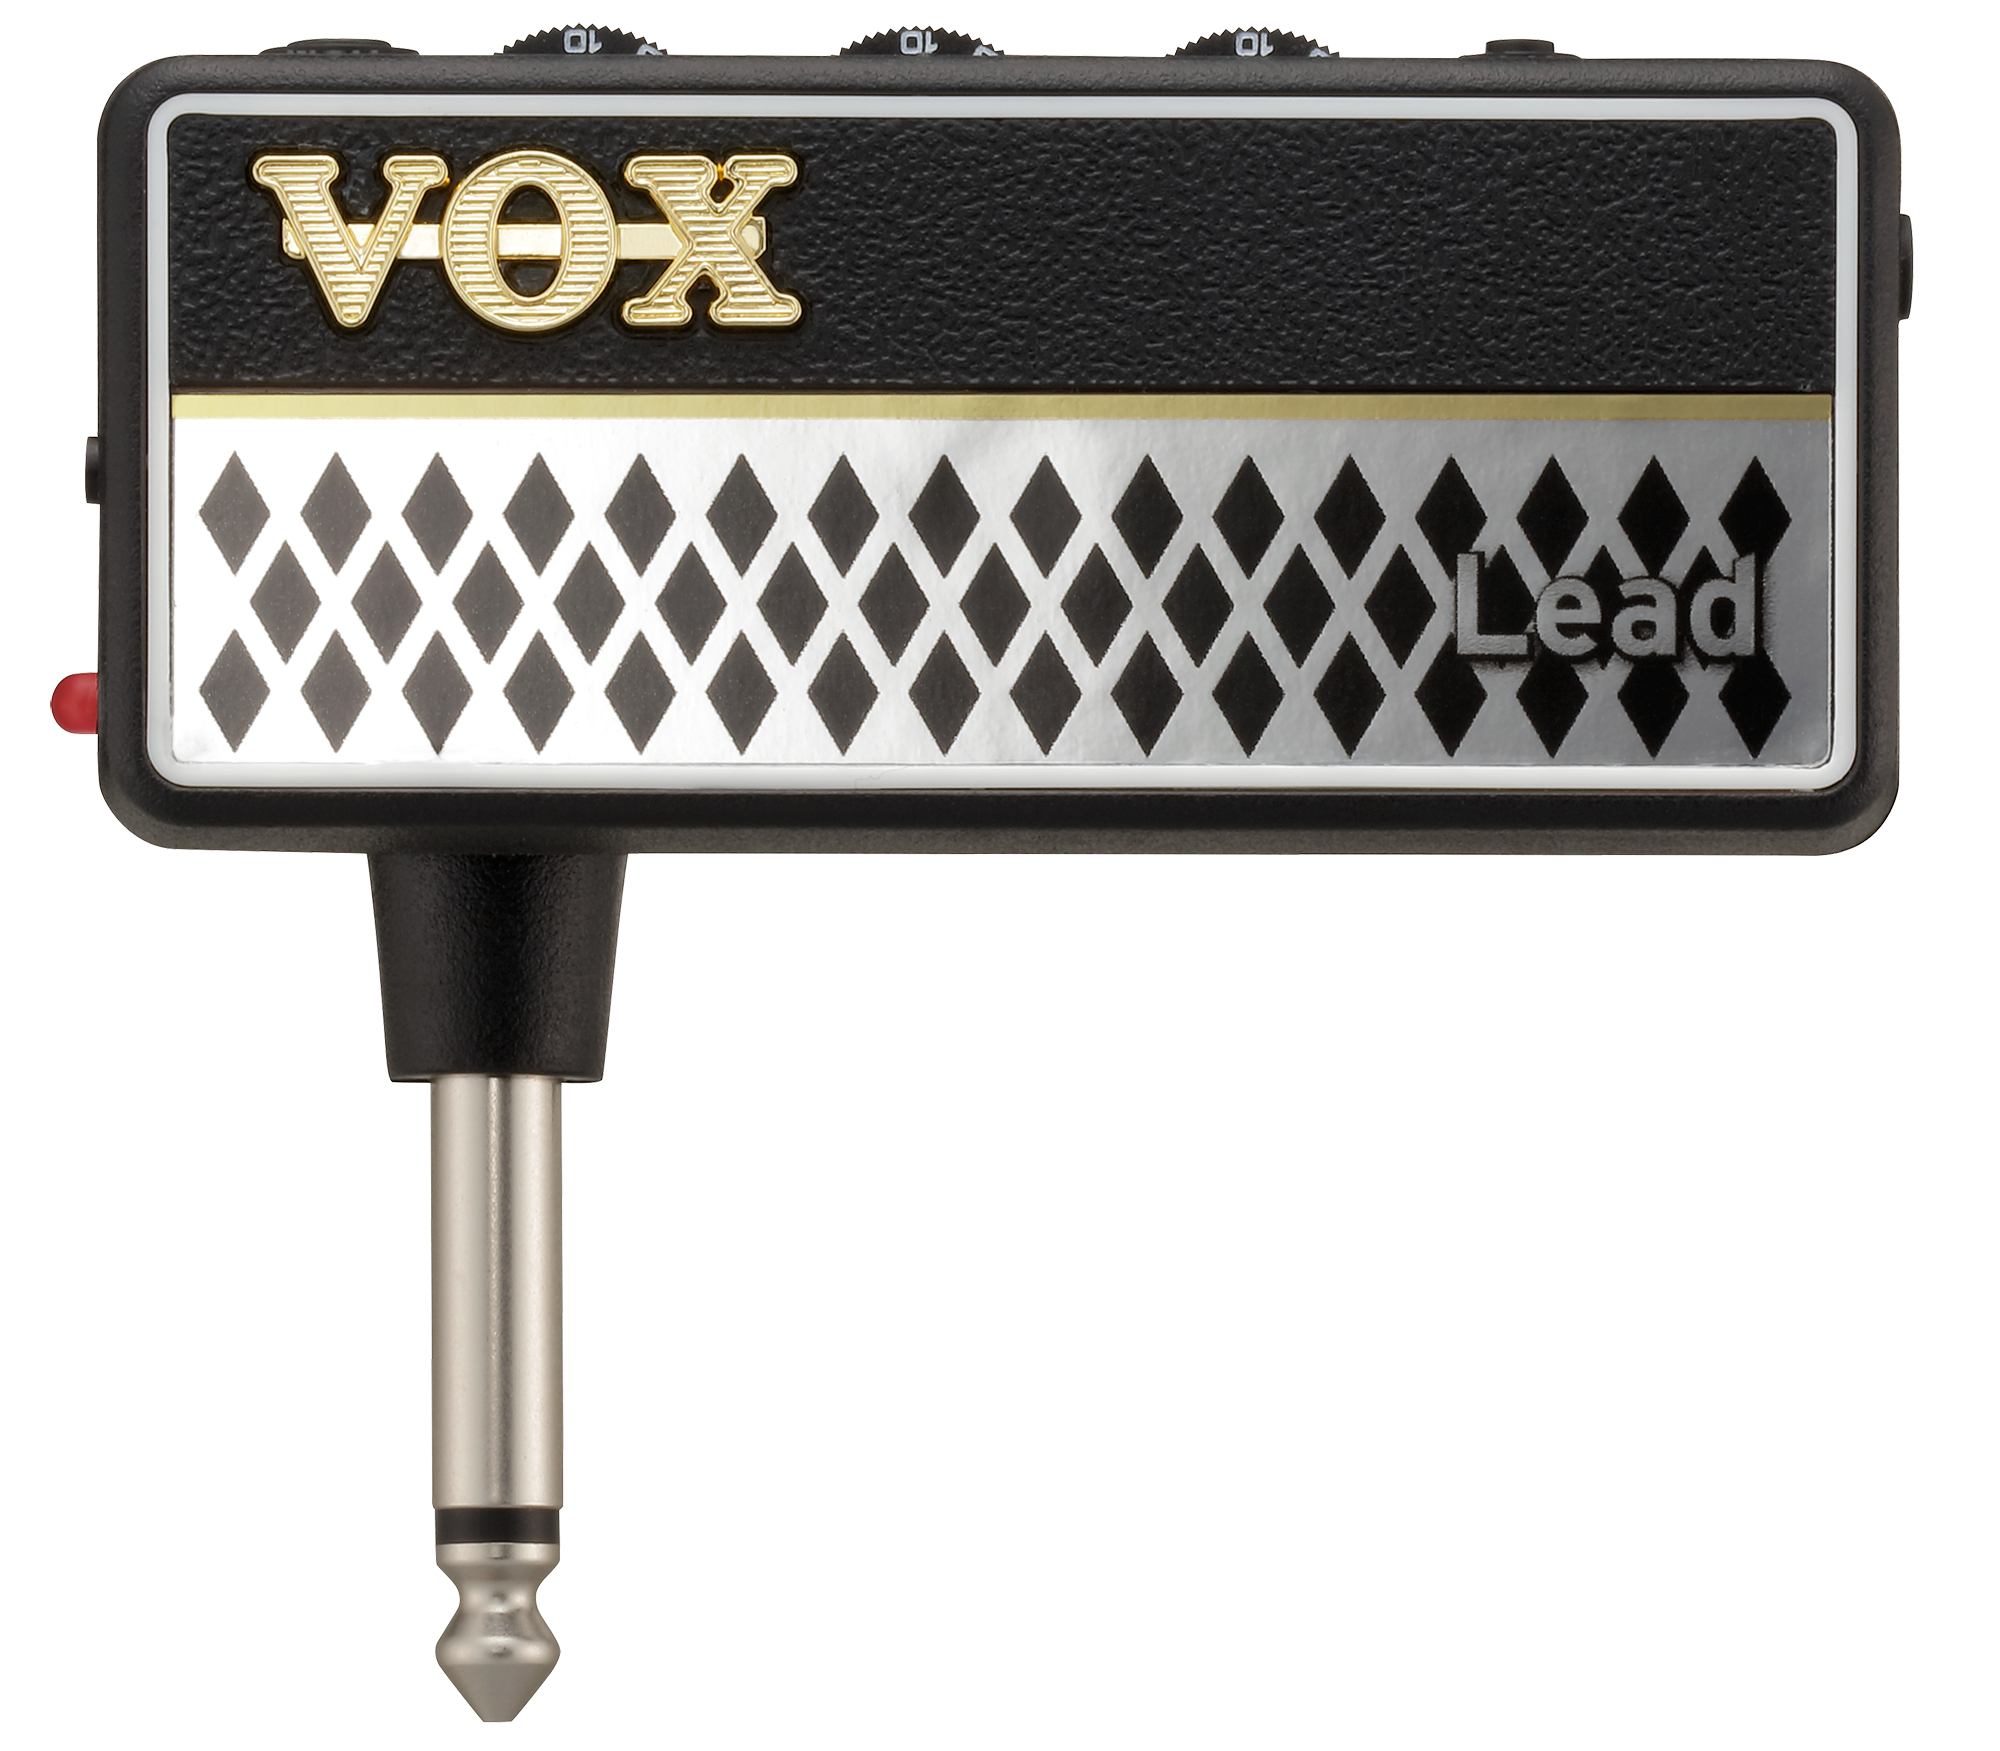 Vox Amplug2 Lead